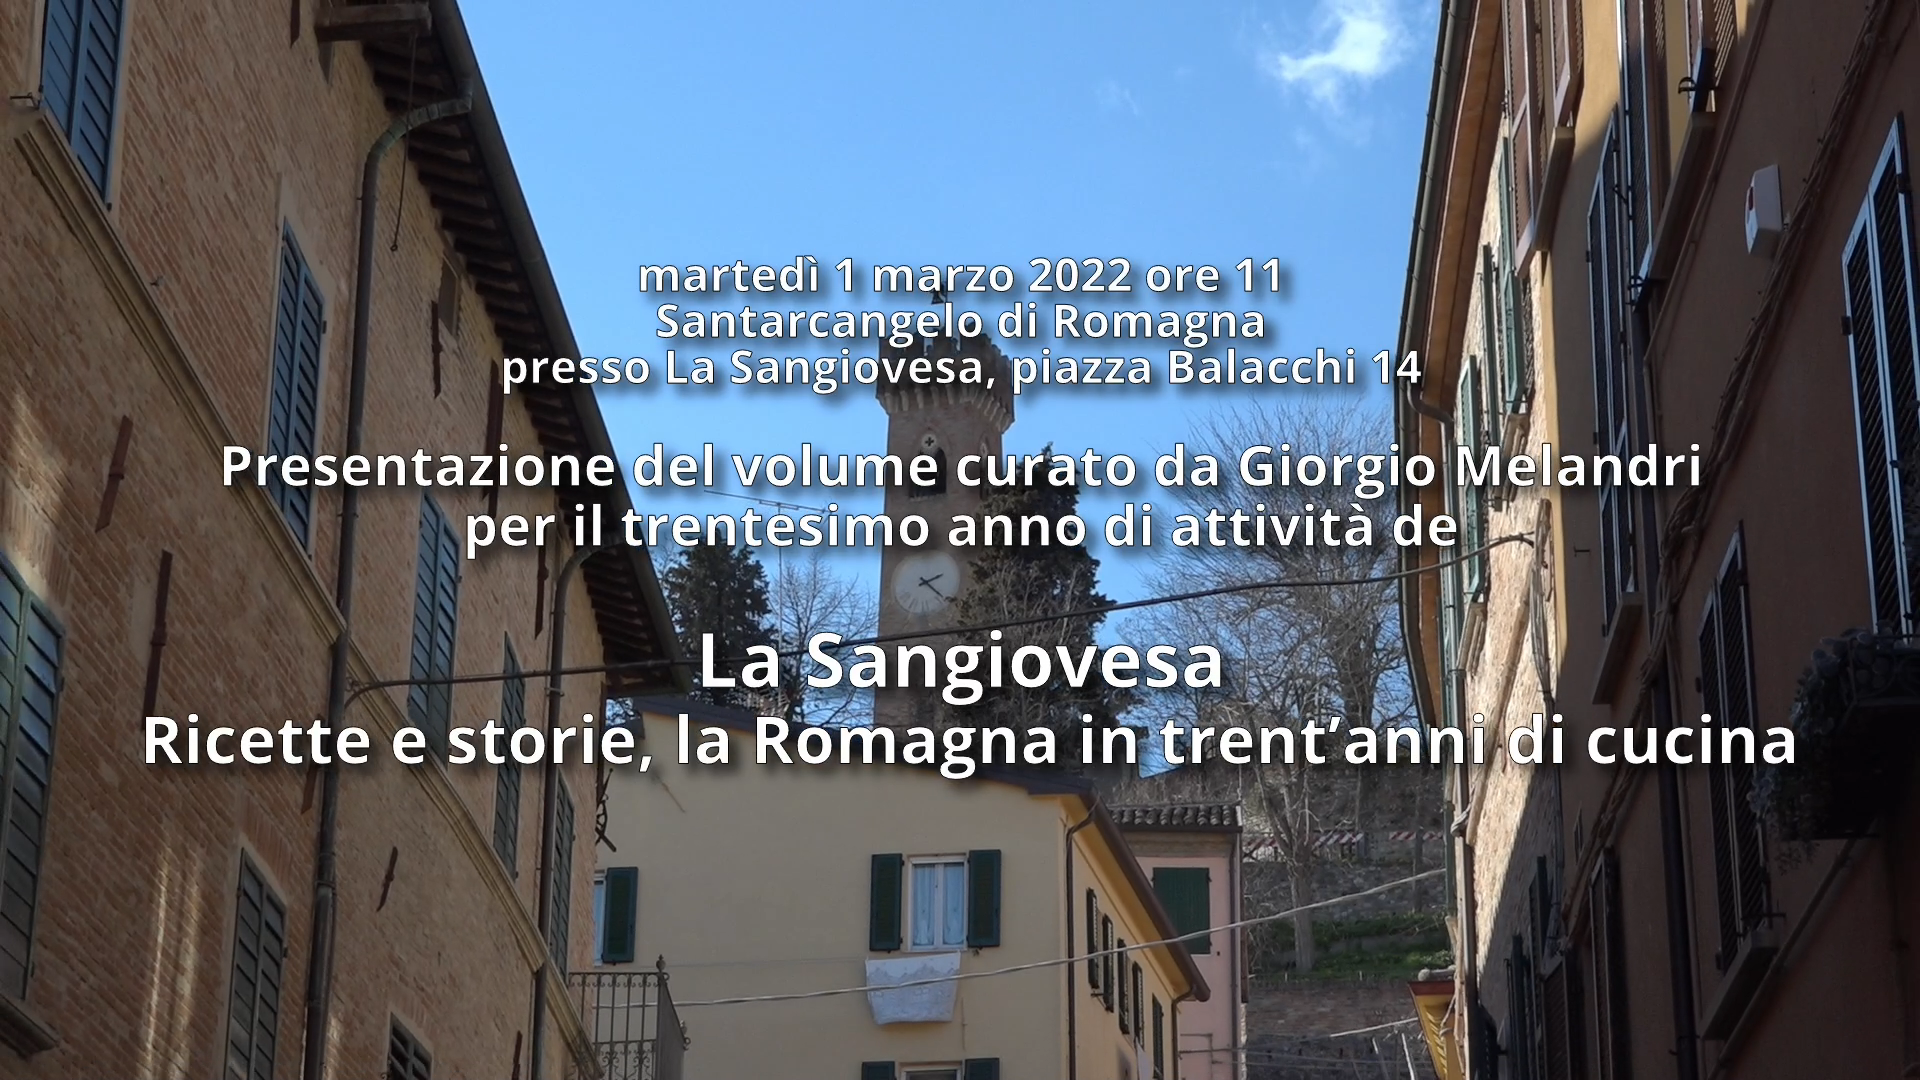 La Sangiovesa: Ricette e storie, la Romagna in trent’anni di cucina